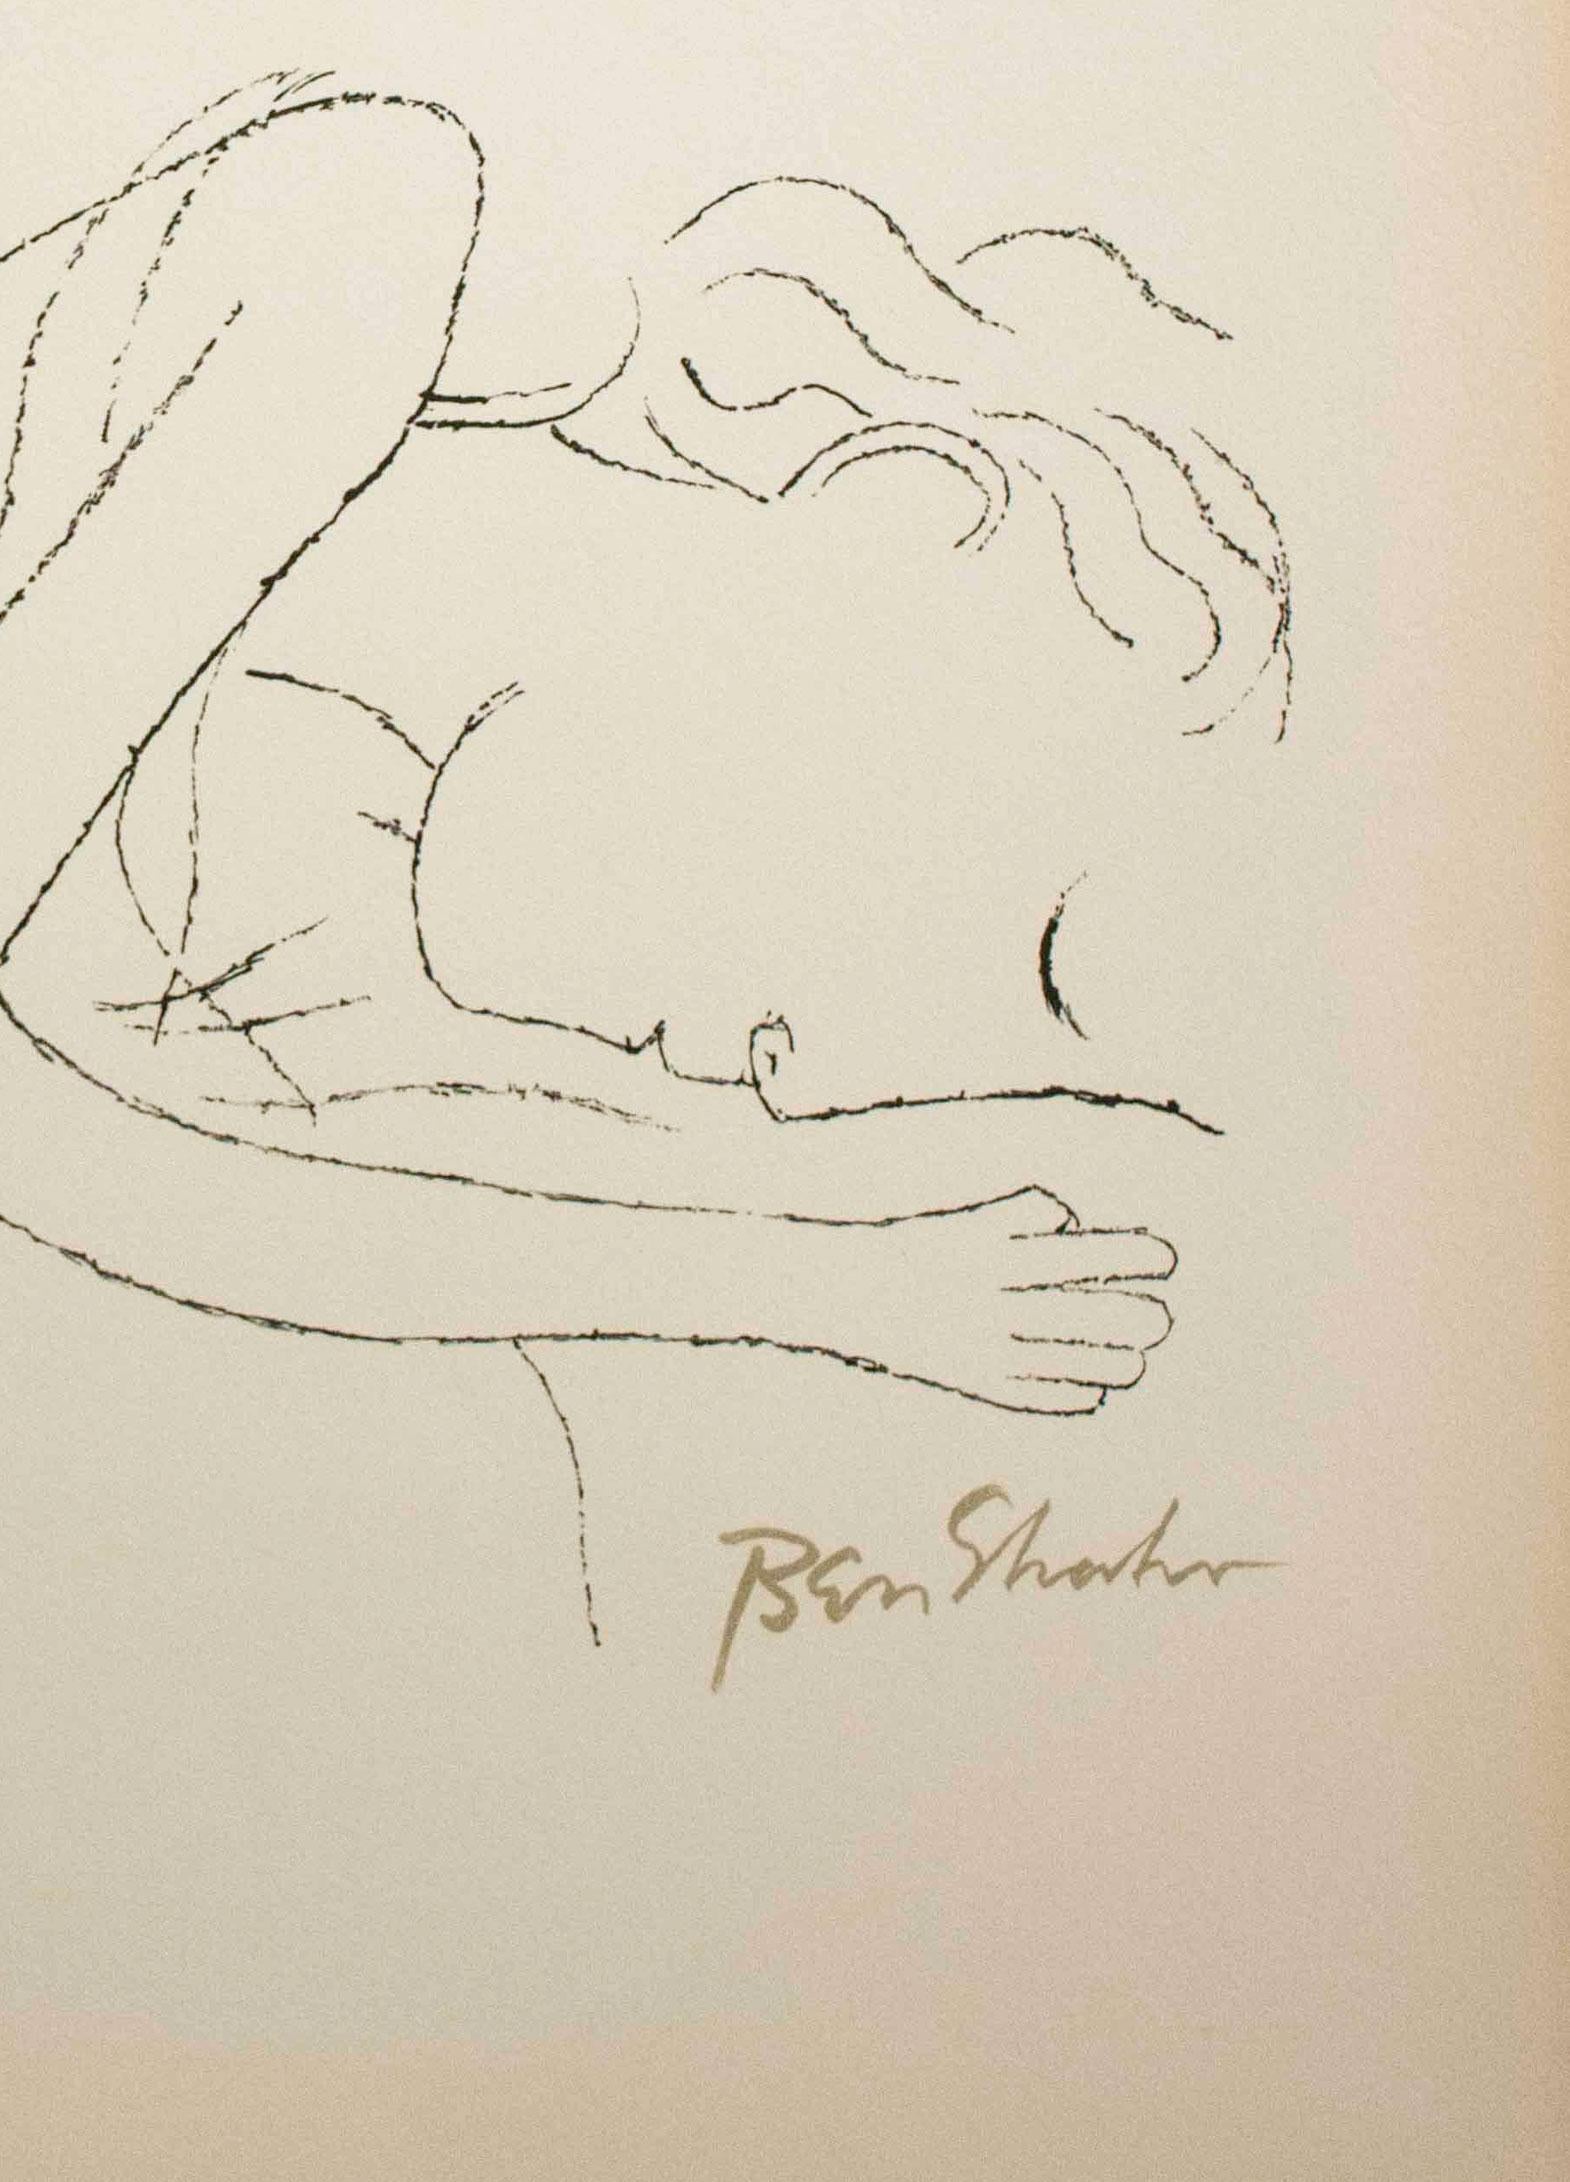 Of Light, White Sleeping Women in Childbed aus dem Rilke-Portfolio (Amerikanischer Realismus), Print, von Ben Shahn